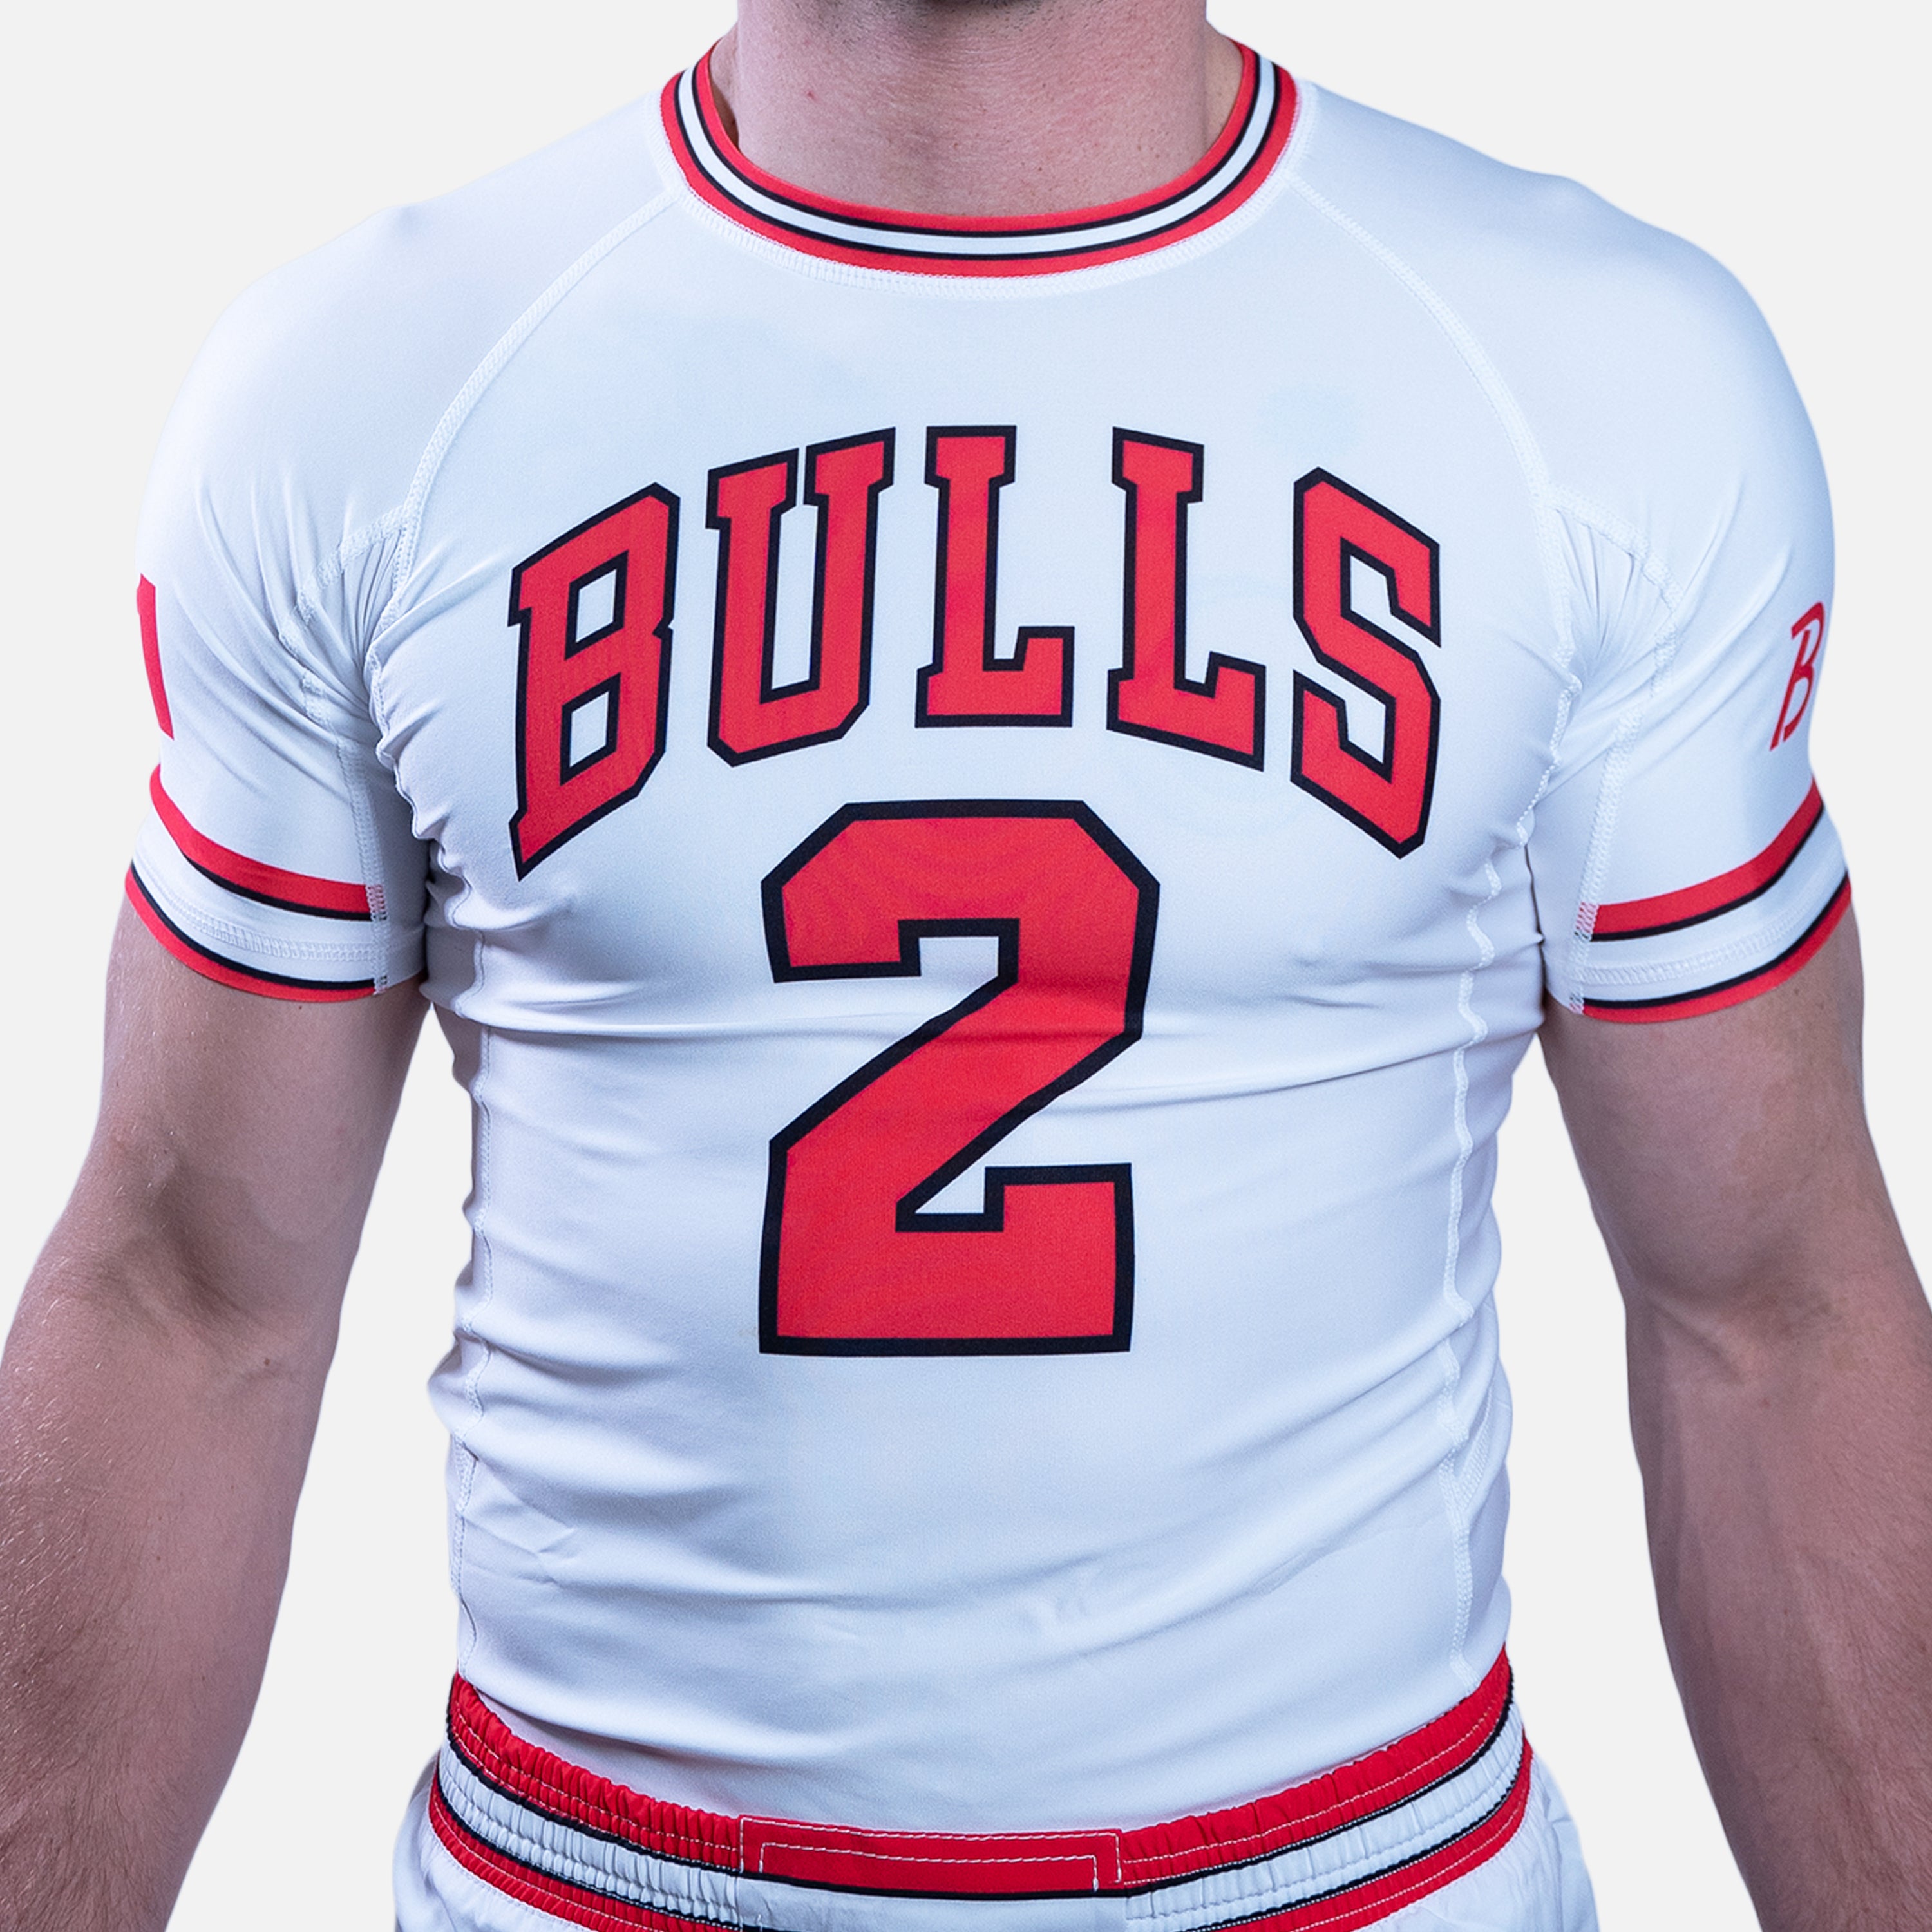 B-Team White Bulls Short Sleeve Rashguard